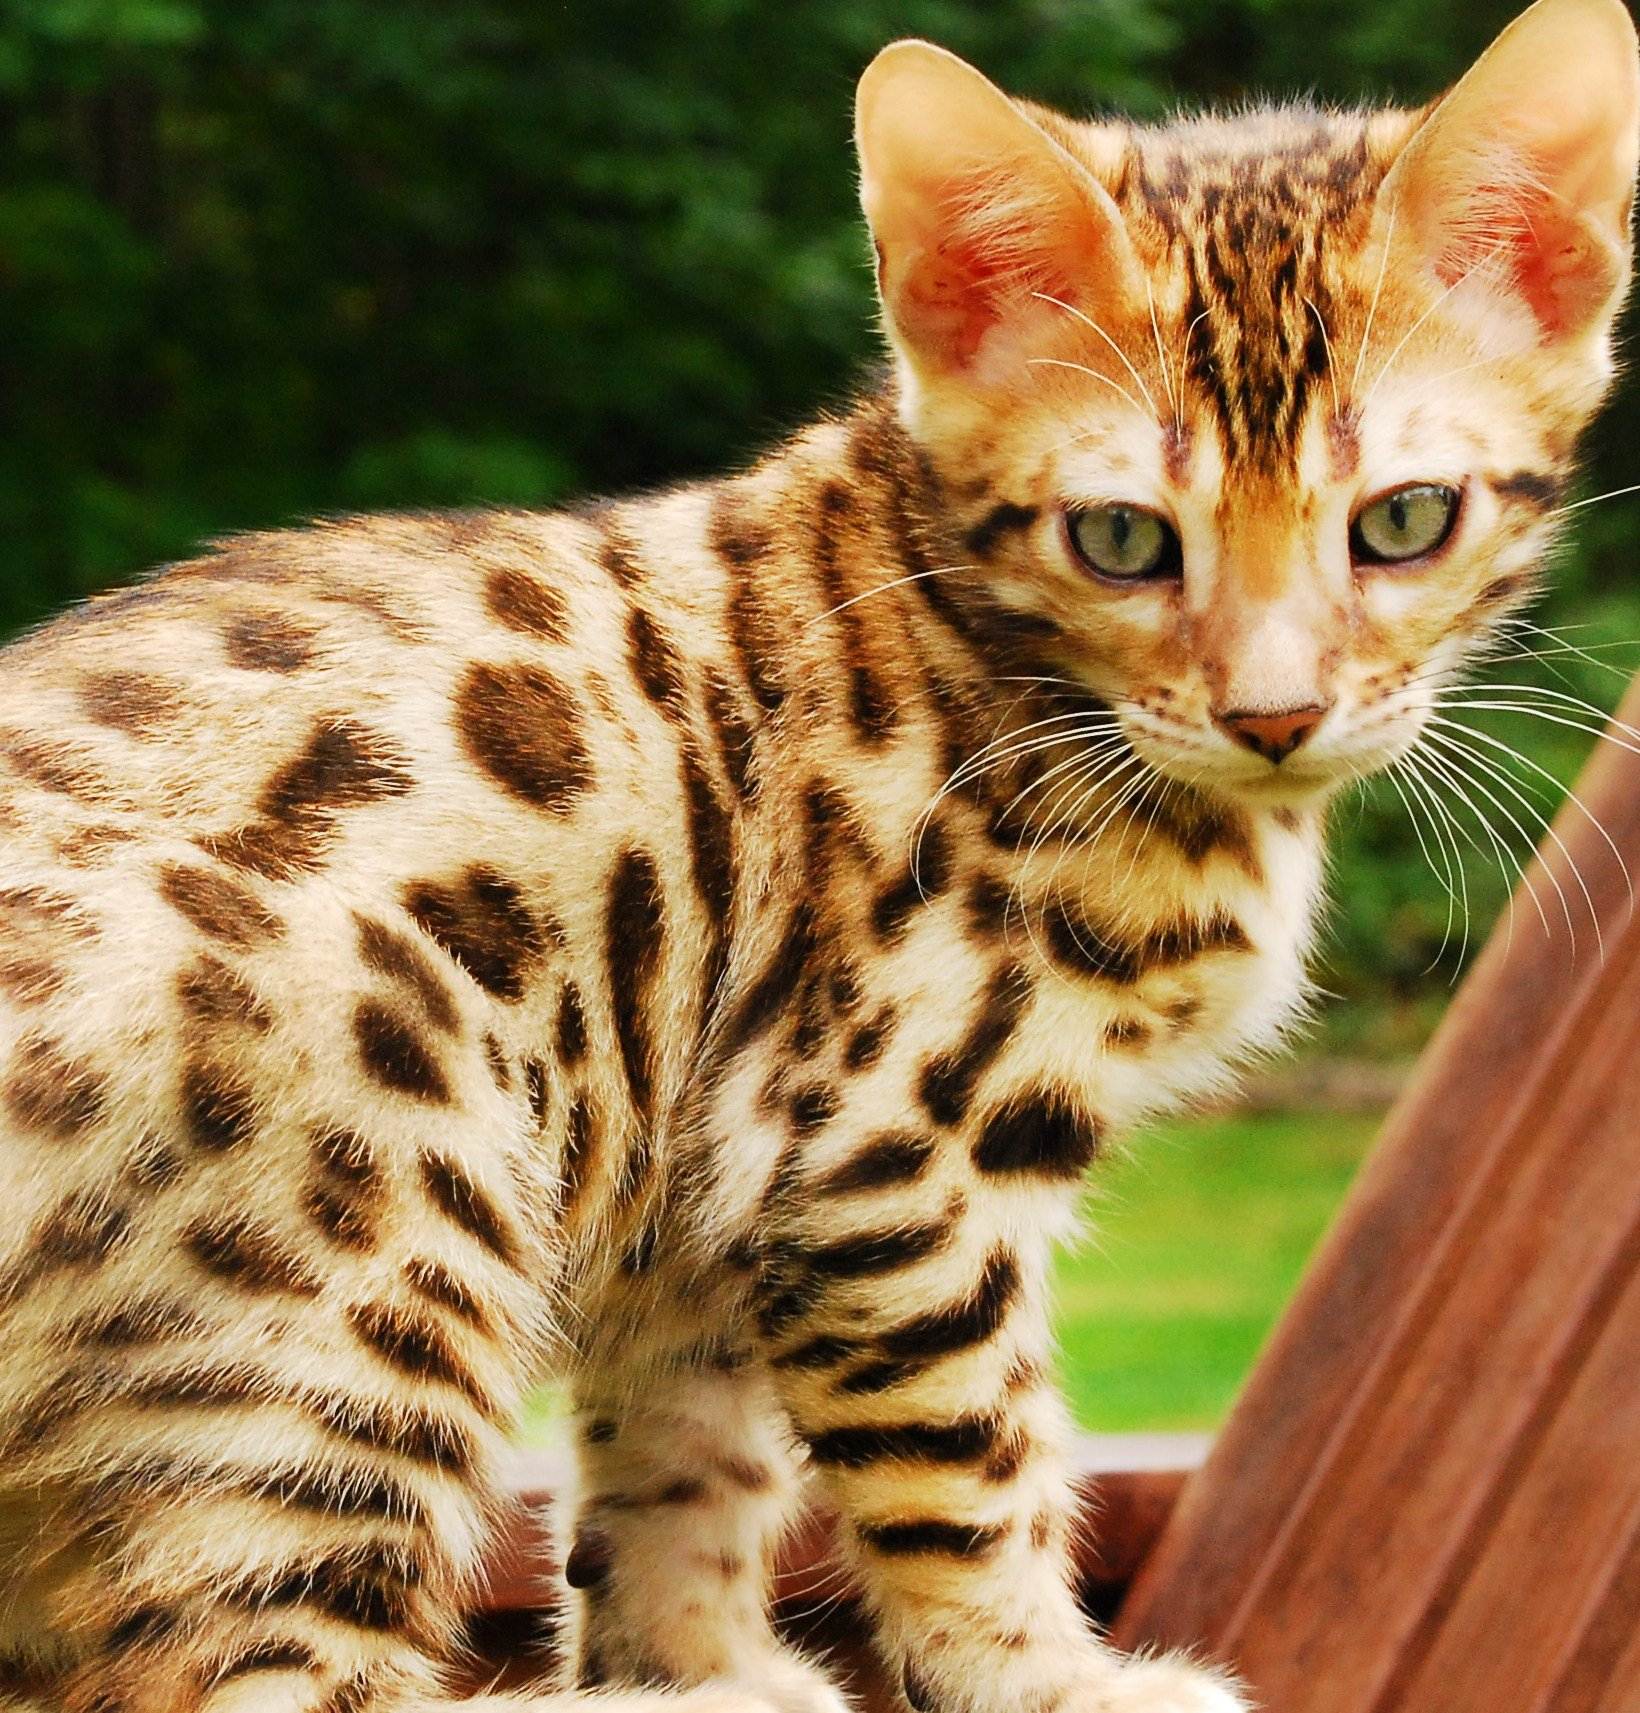 Породистые кошки пятнистого окраса, похожие на леопарда